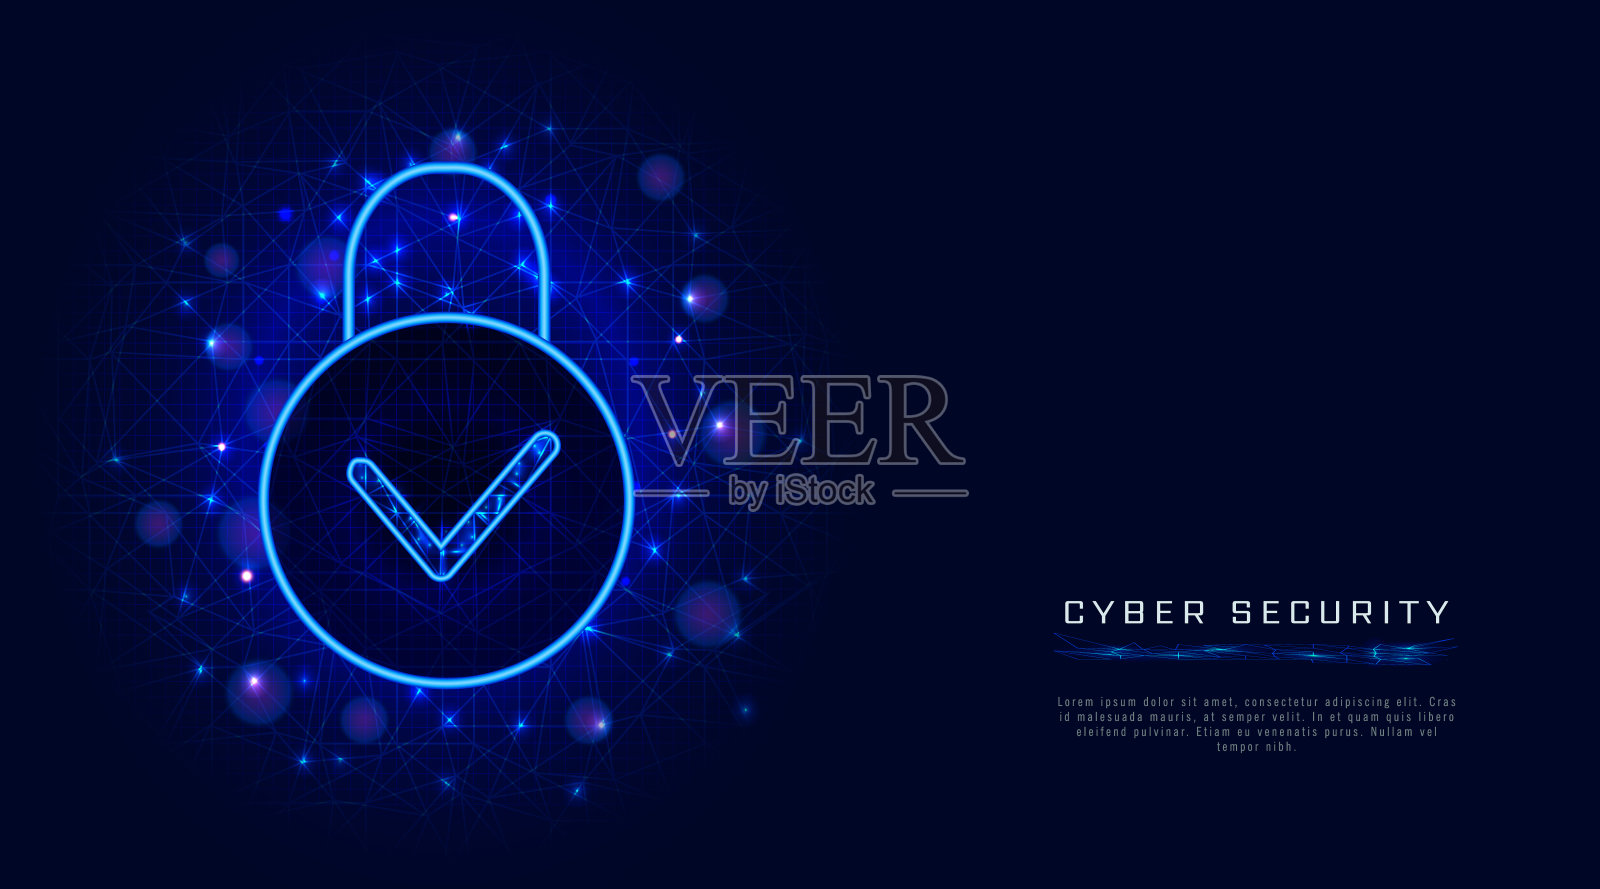 网络安全技术和安全云数据隐私保护概念与挂锁图标和检查标记的抽象蓝色多边形网格背景。模板横幅，海报或促销。矢量图插画图片素材